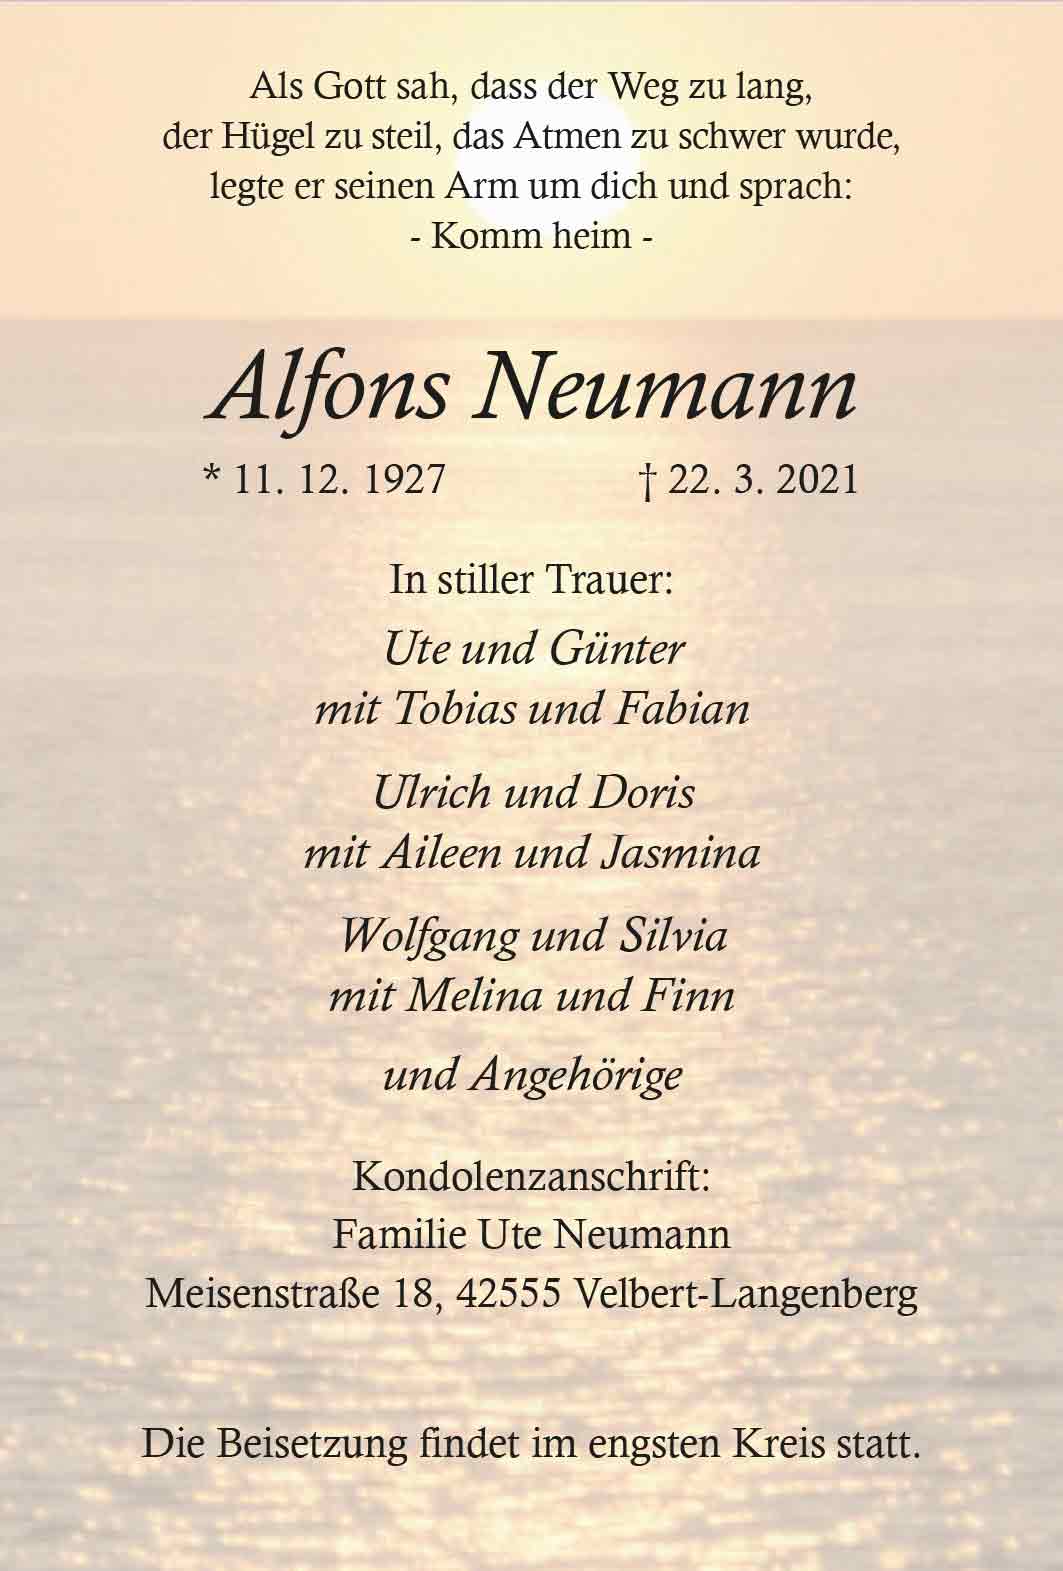 Alfons Neumann † 22. 3. 2021